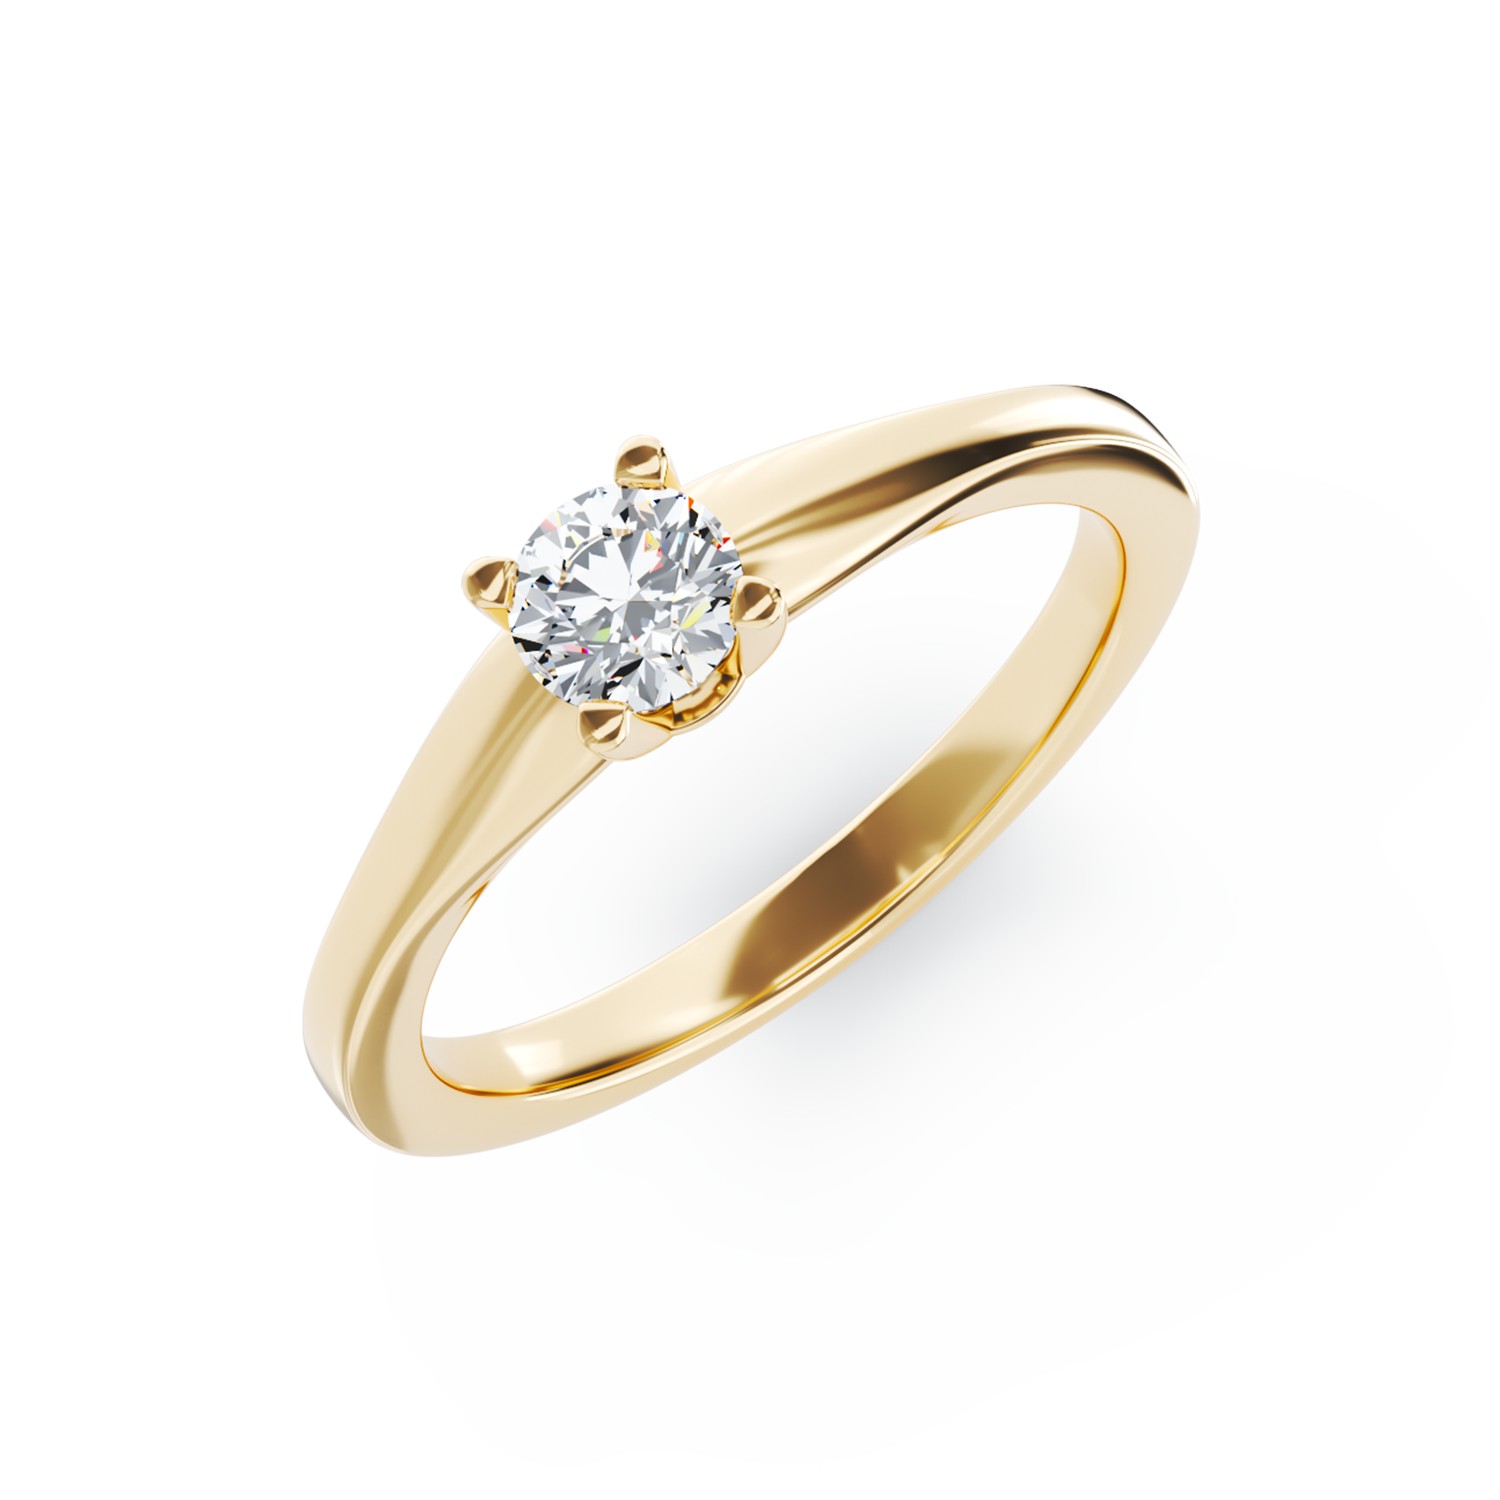 Eljegyzési gyűrű 18K-os sárga aranyból 0,24ct gyémánttal. Gramm: 2,50